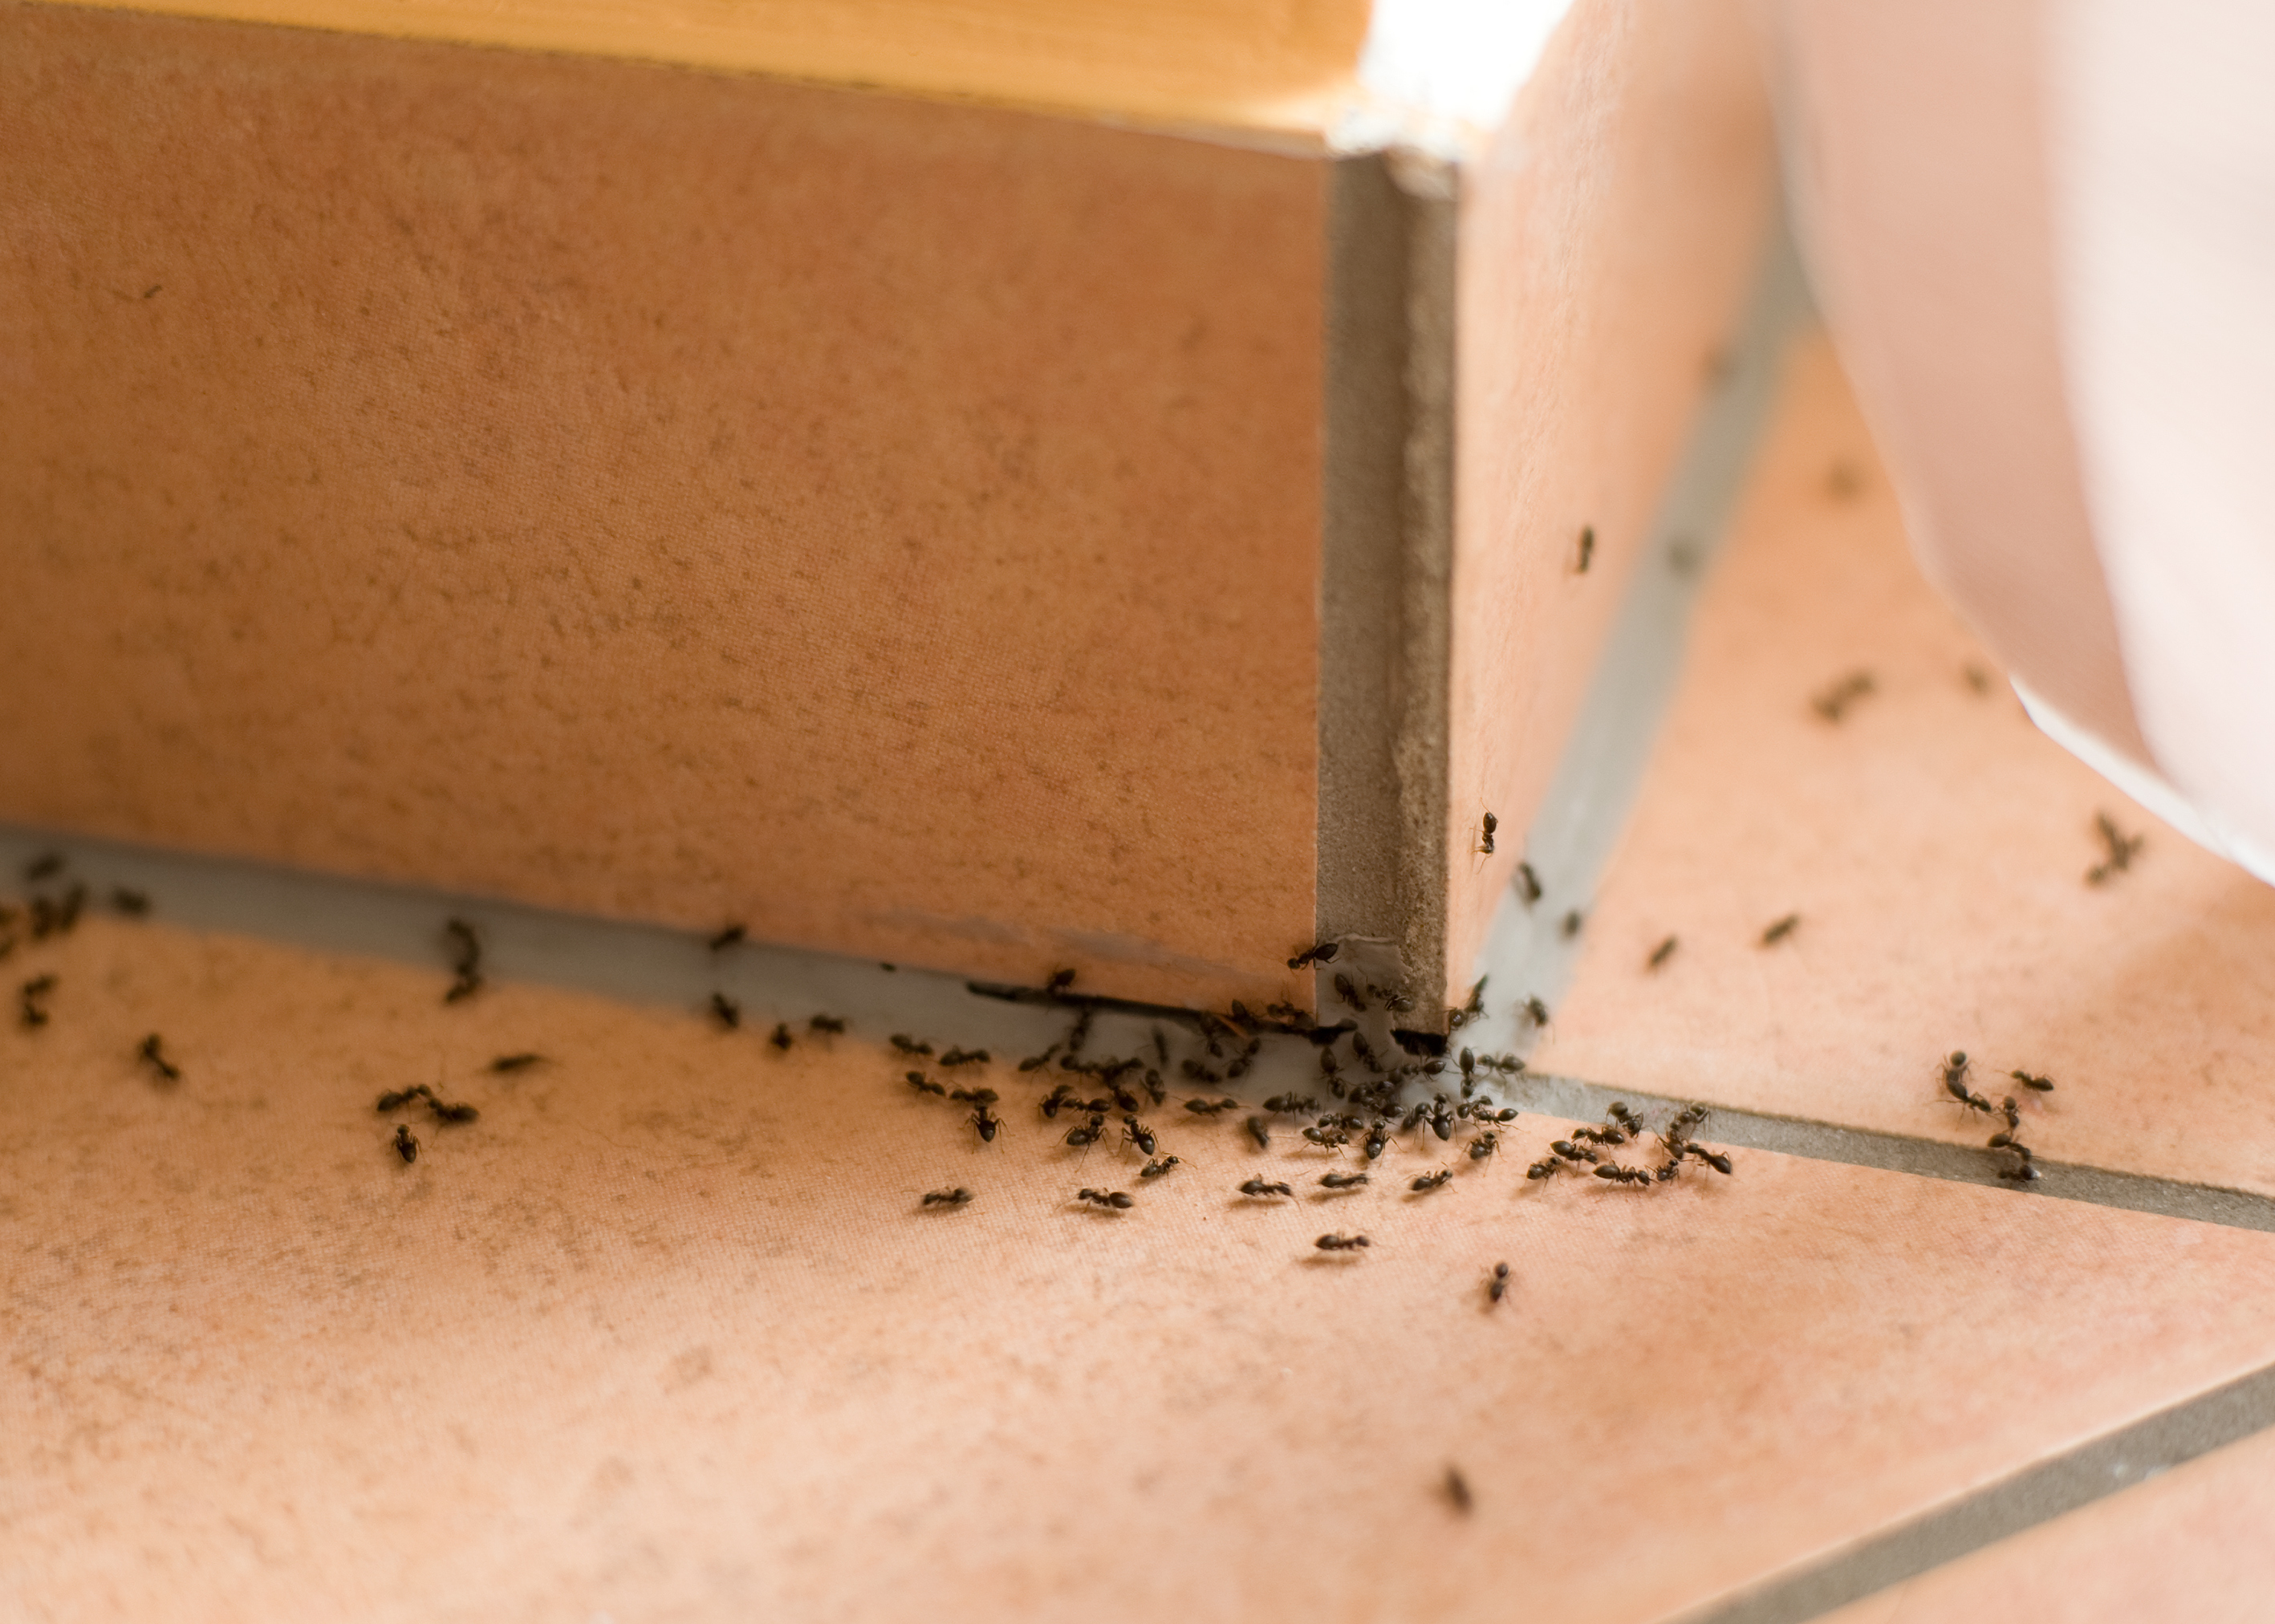 rozsyp w kuchni i przy oknach. skutecznie wypędzisz mrówki z domu. wydasz tylko 2 zł